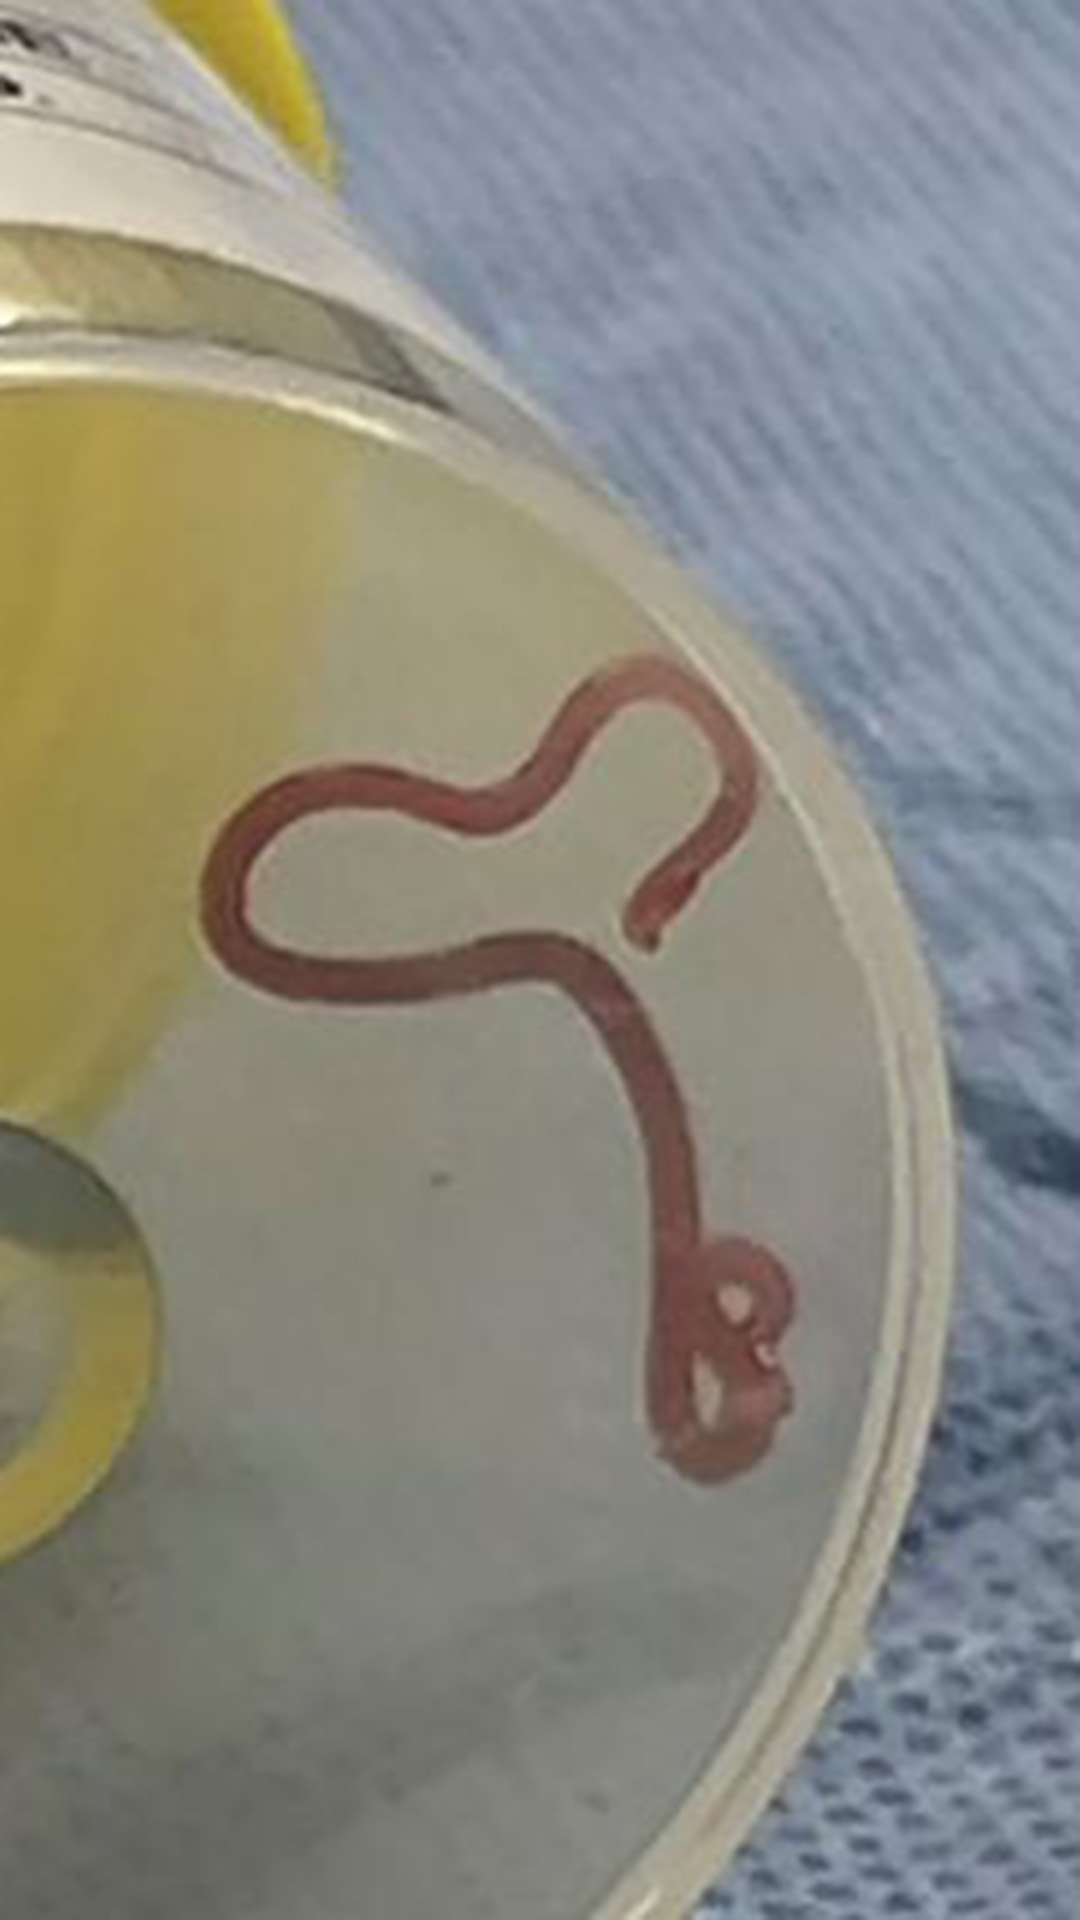  Un ver vivant de 8 centimètres retiré du cerveau d’une femme, en Australie